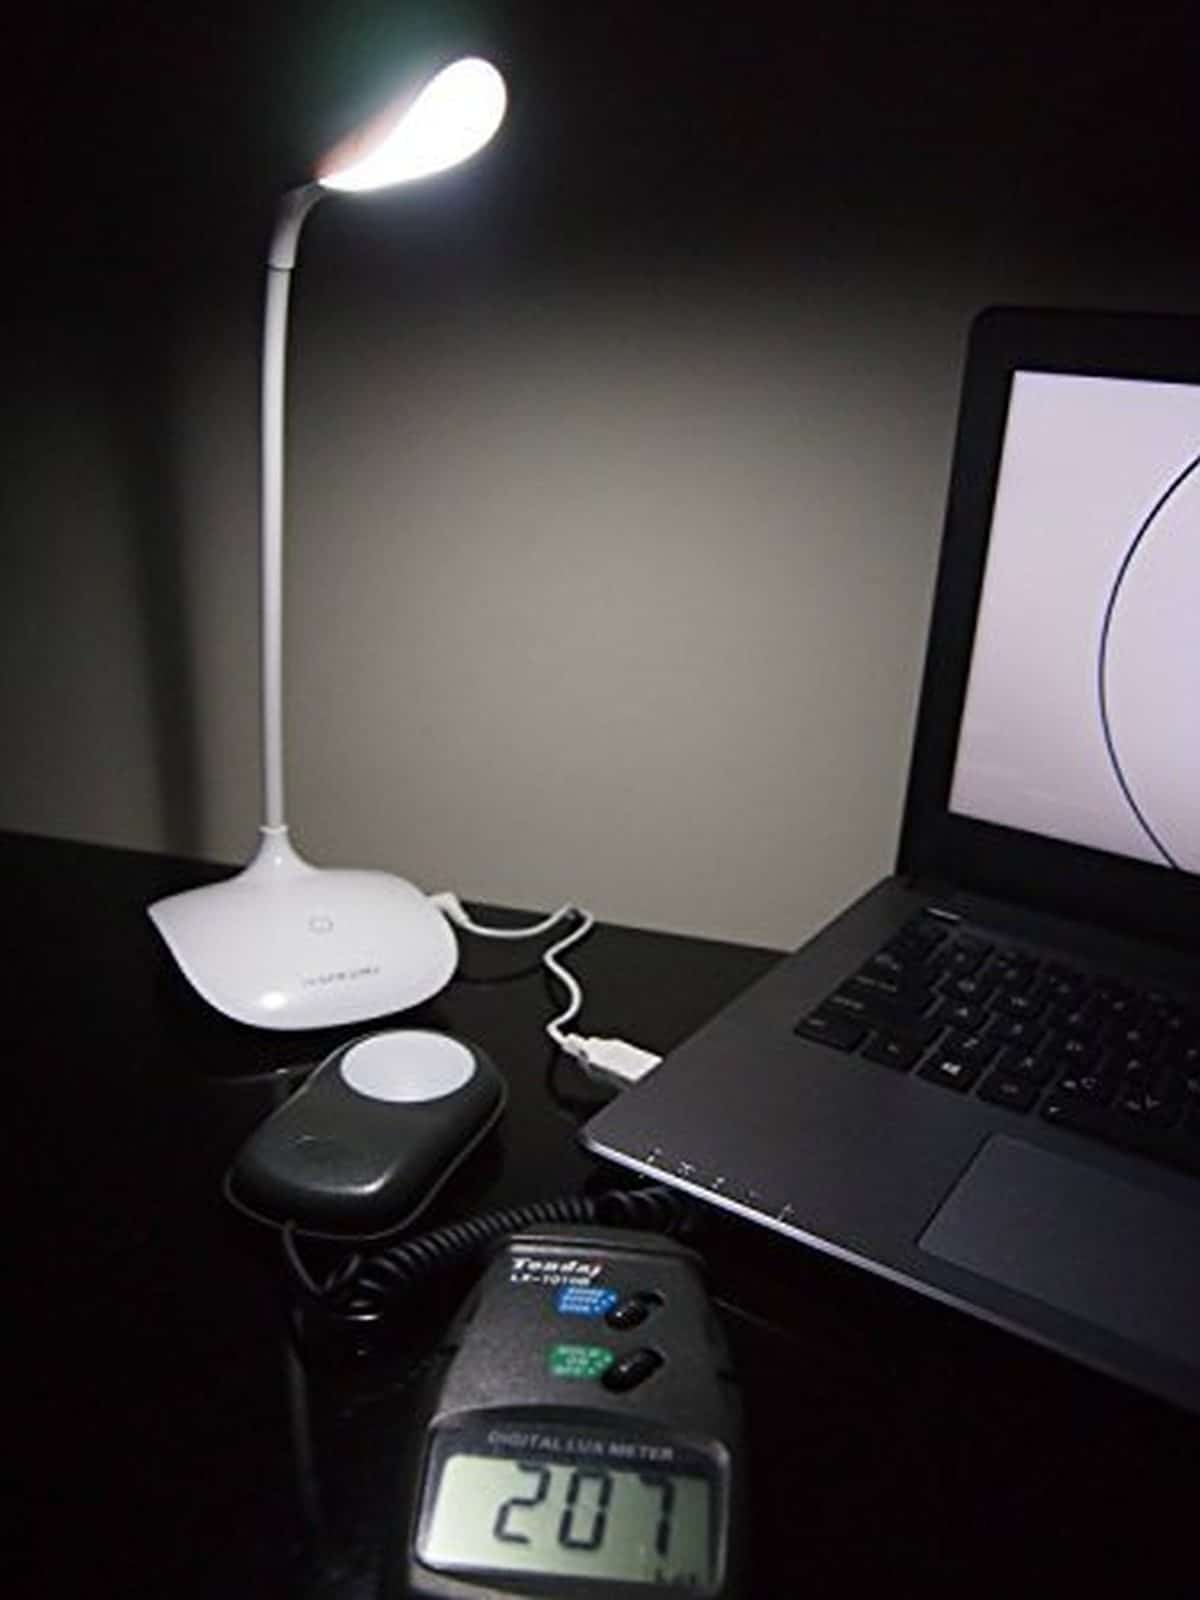 Hapurs Reading Desk Lamp | Get These Tech Gadgets Via Amazon Prime